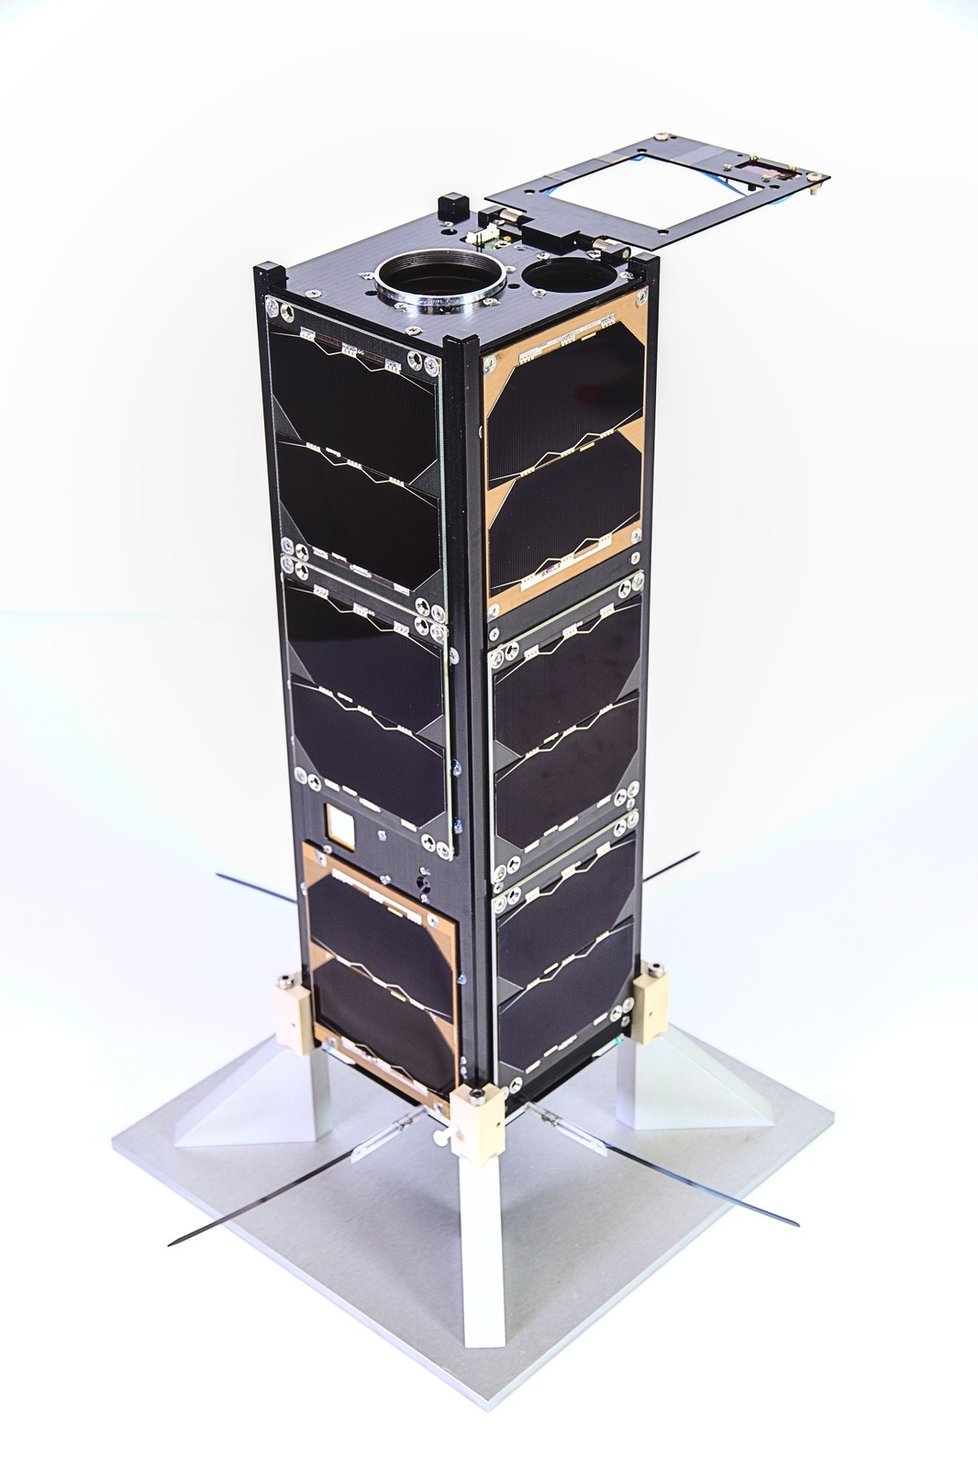 Satelit tvoří tři deseticentimetrové kostky, takzvané cubesaty.